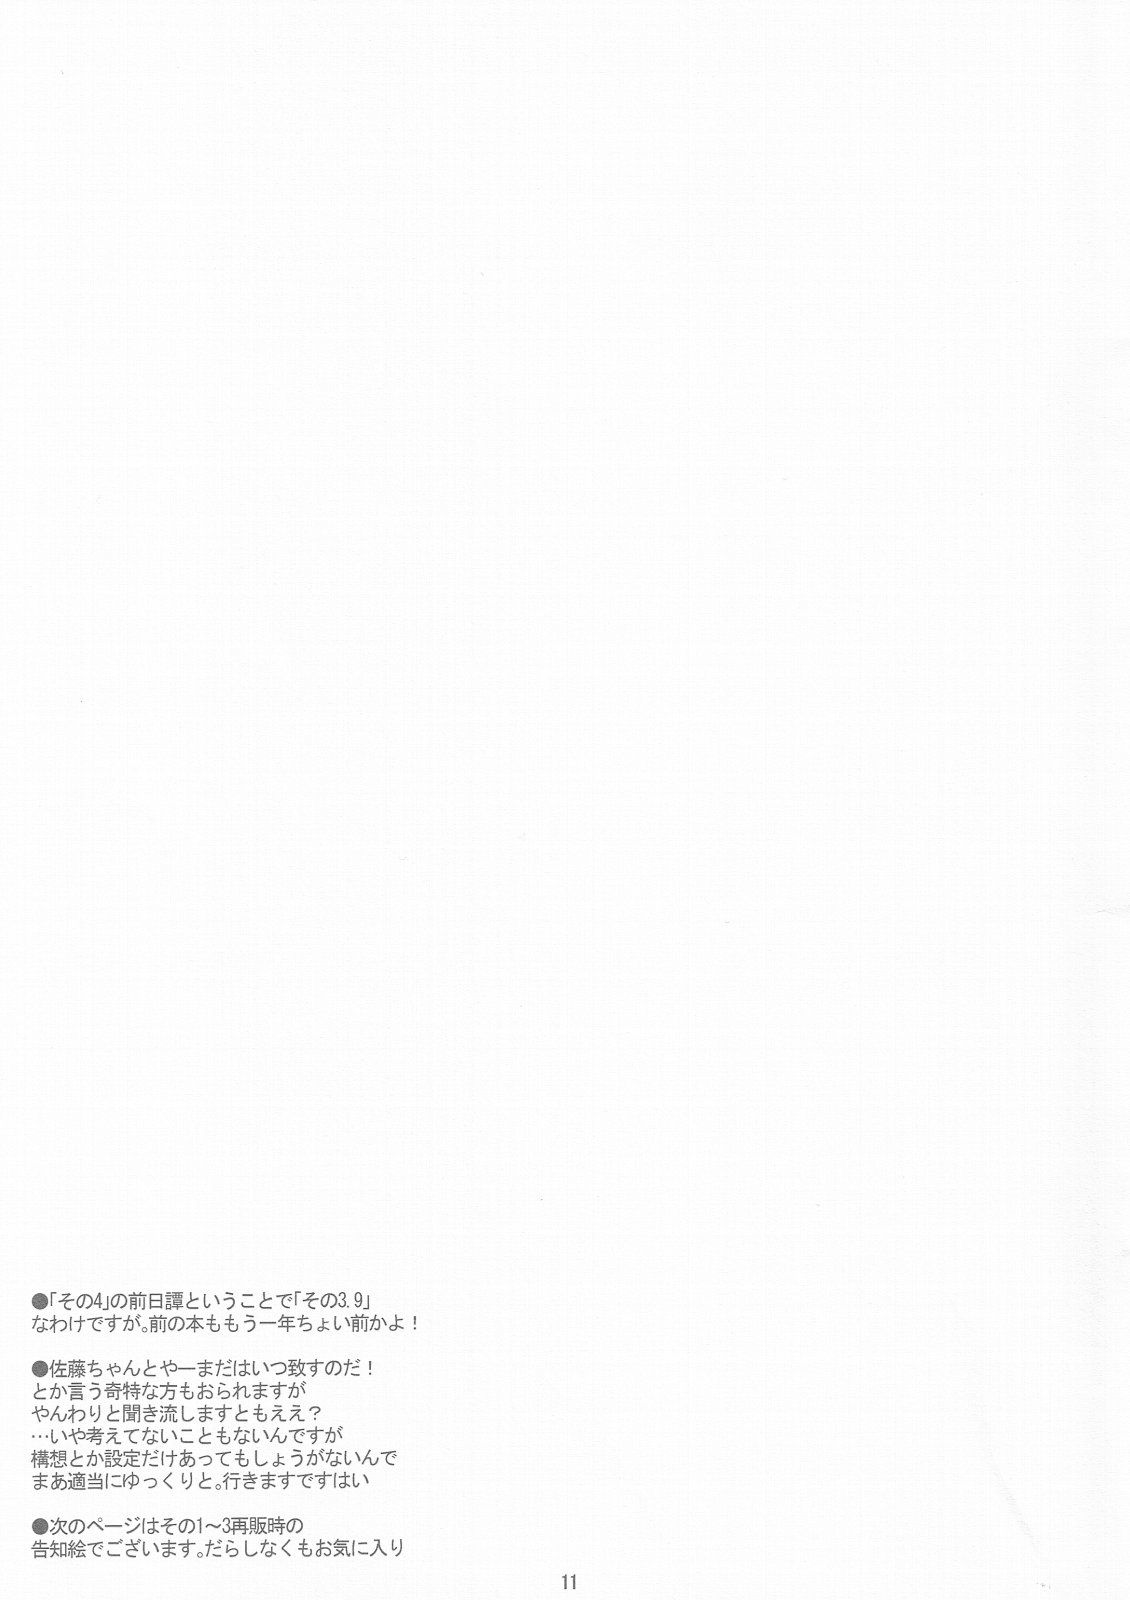 【ステレオレンジ】SATO + YAMA SONO3.9